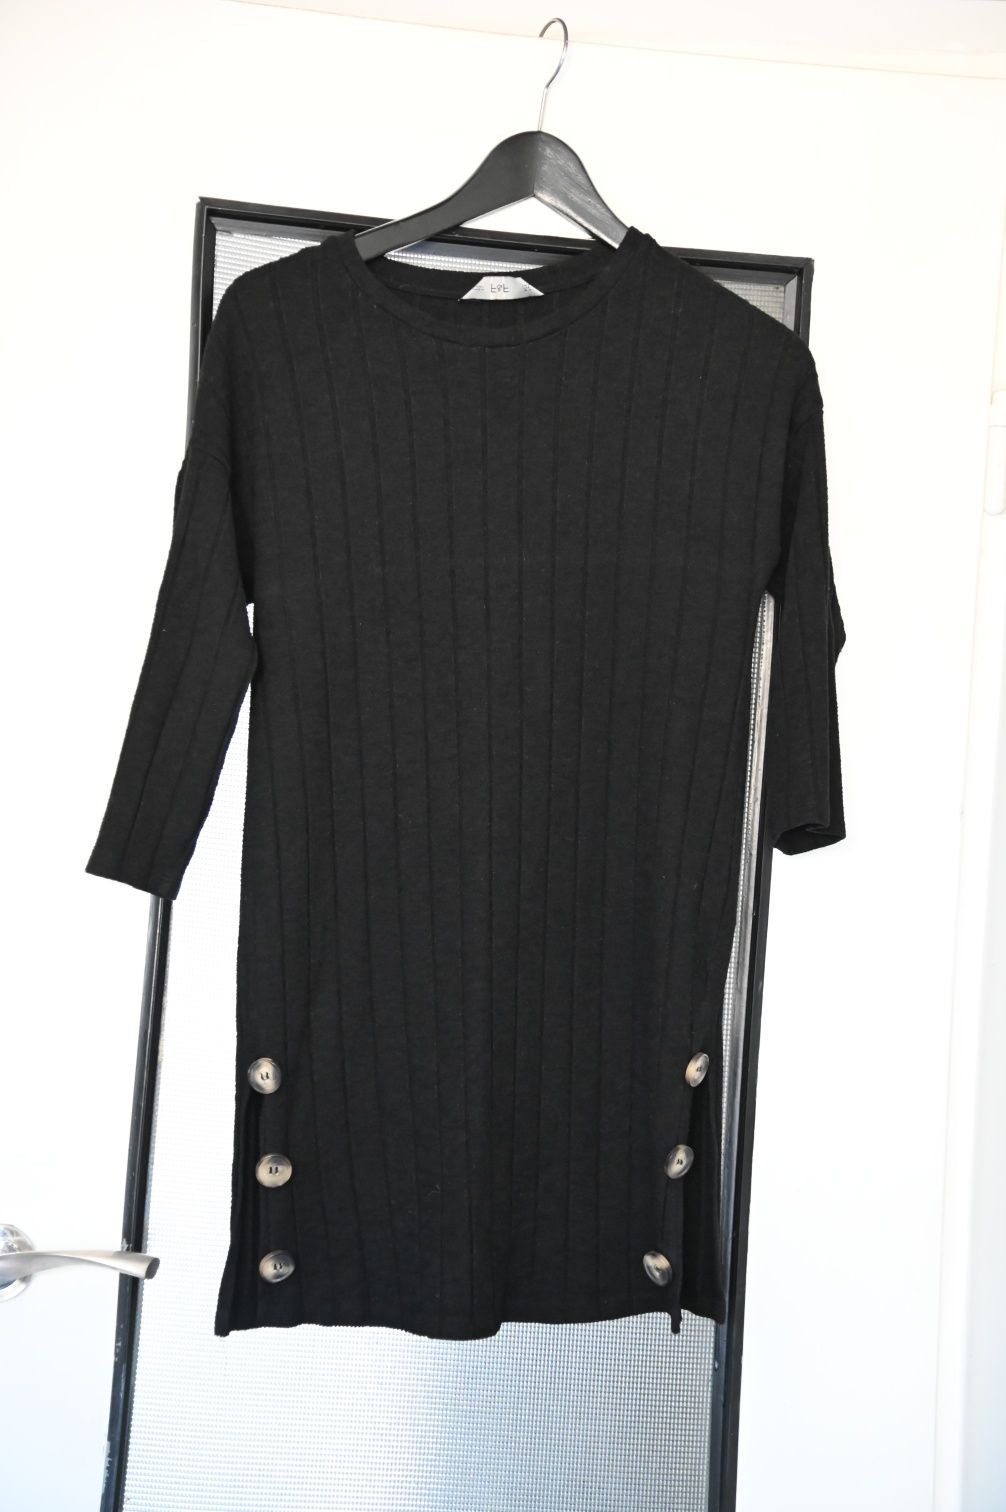 Sukienka, tunika - f&f - czarna z guzikami na dole

- S